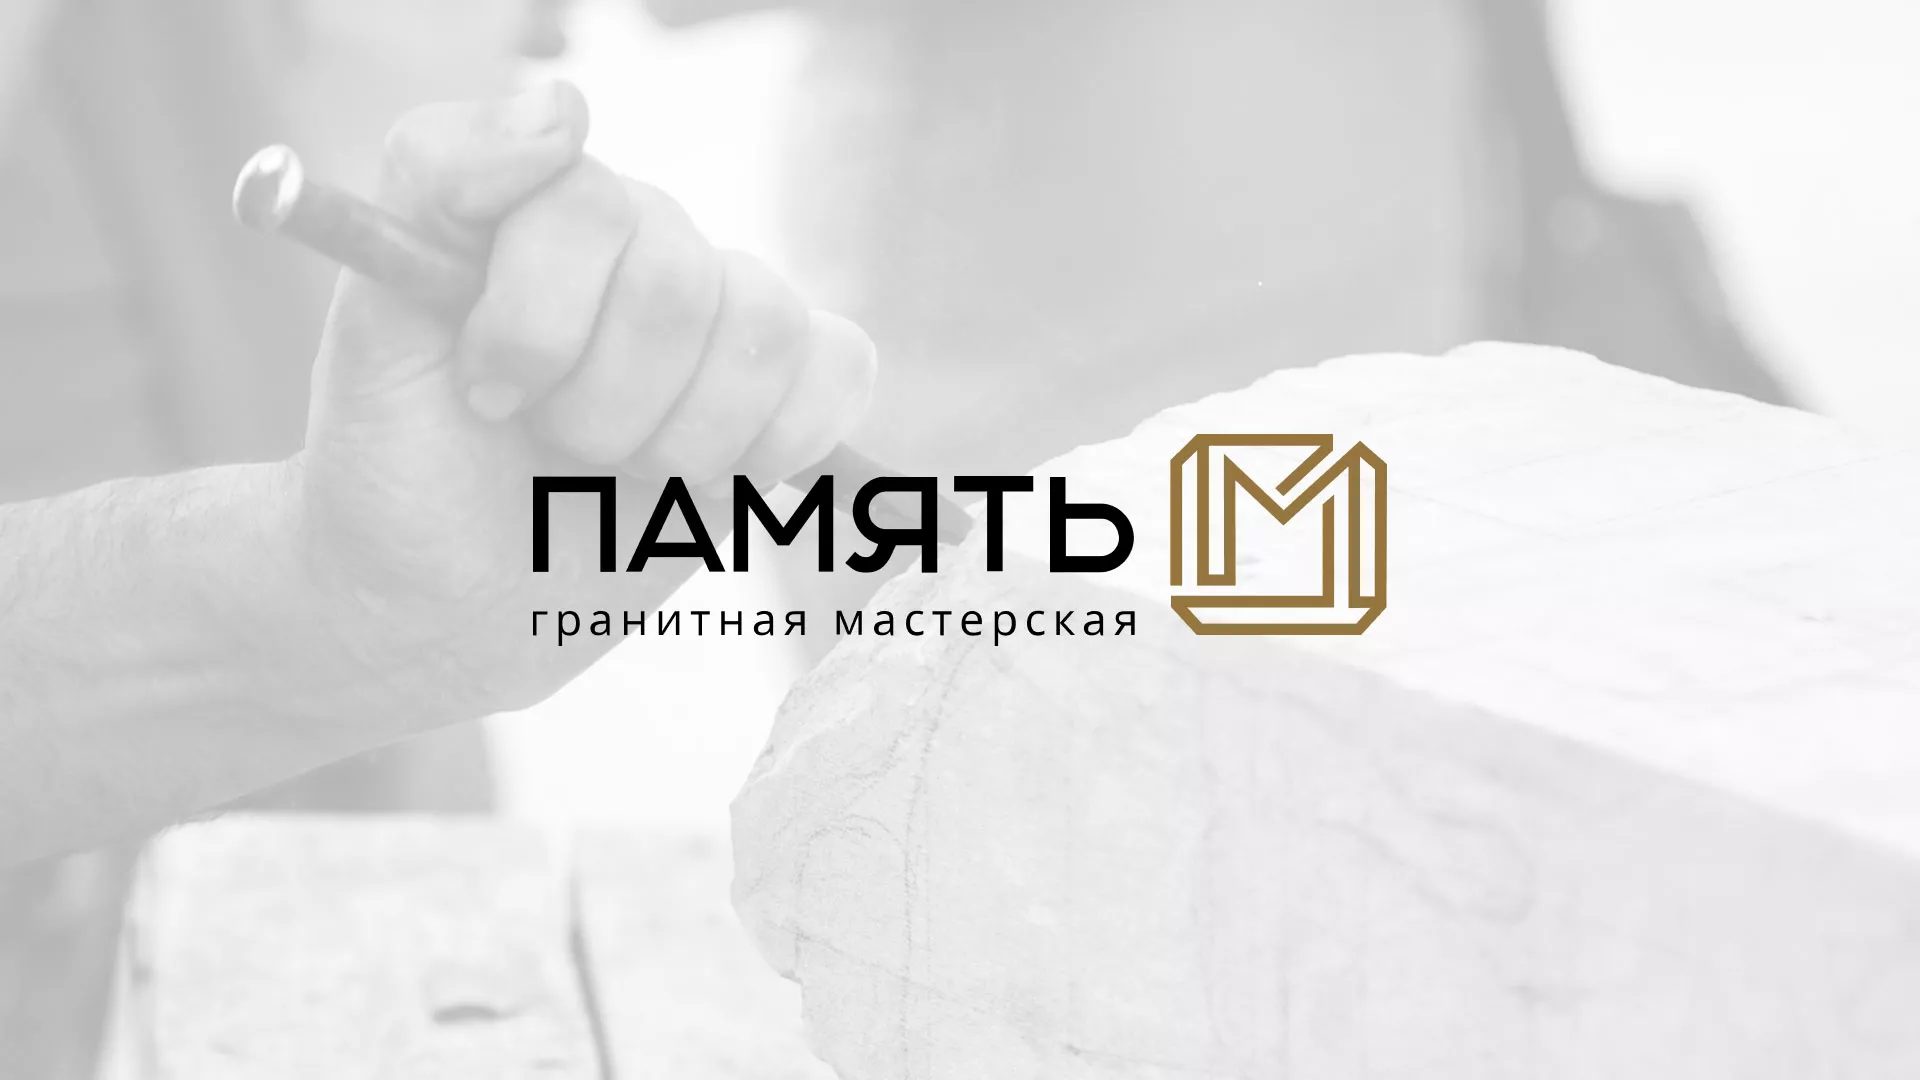 Разработка логотипа и сайта компании «Память-М» в Баймаке